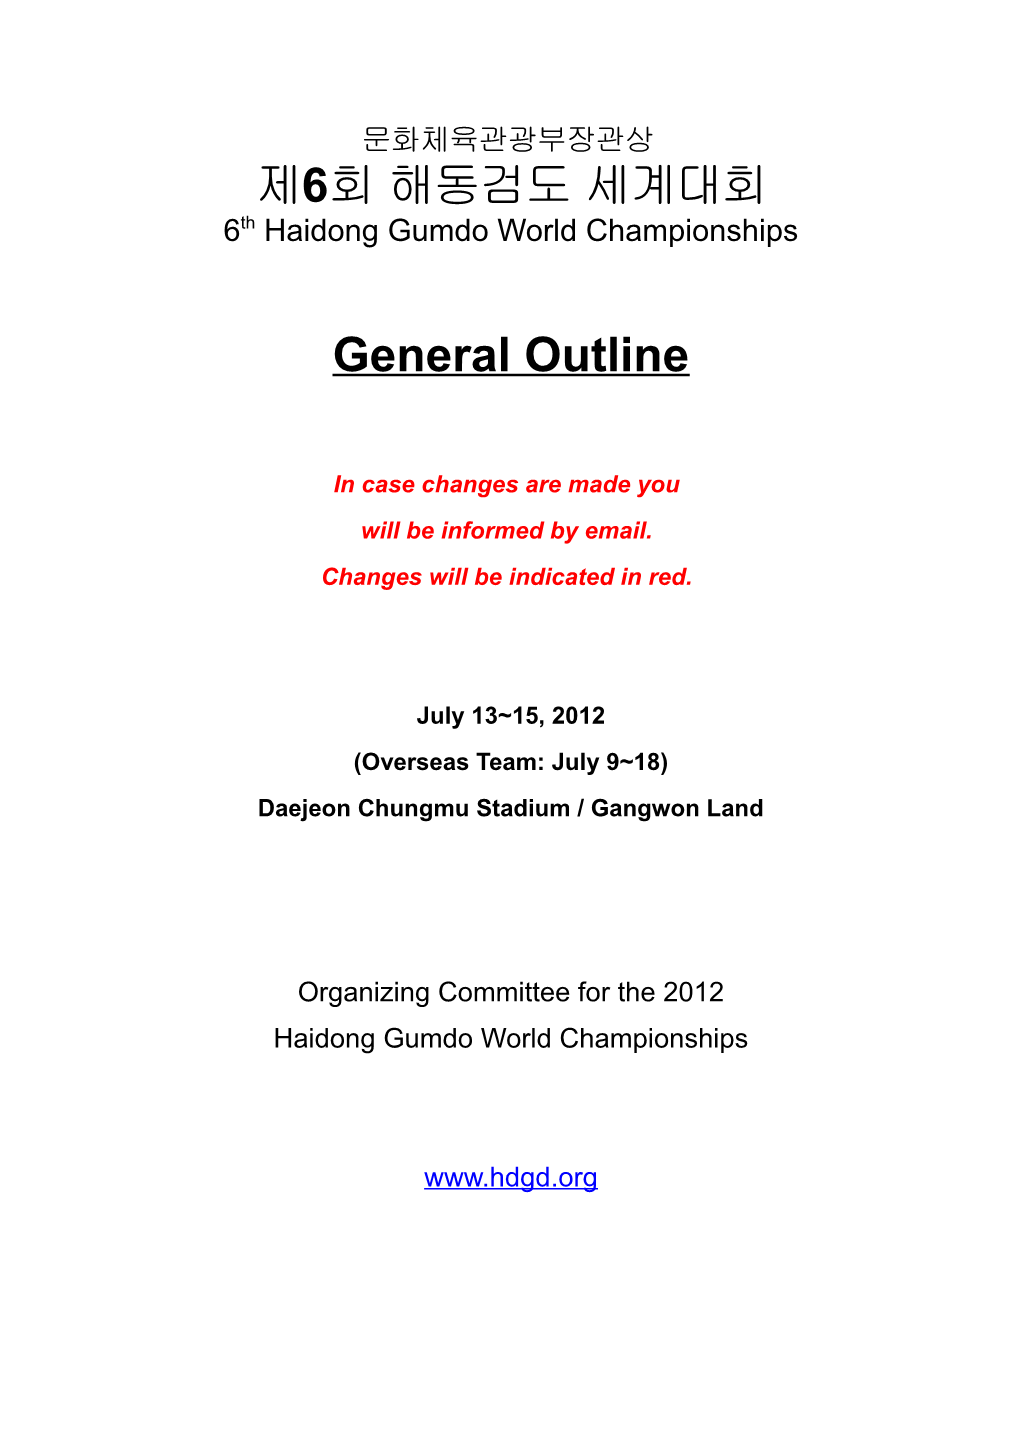 6Th Haidong Gumdo World Championships